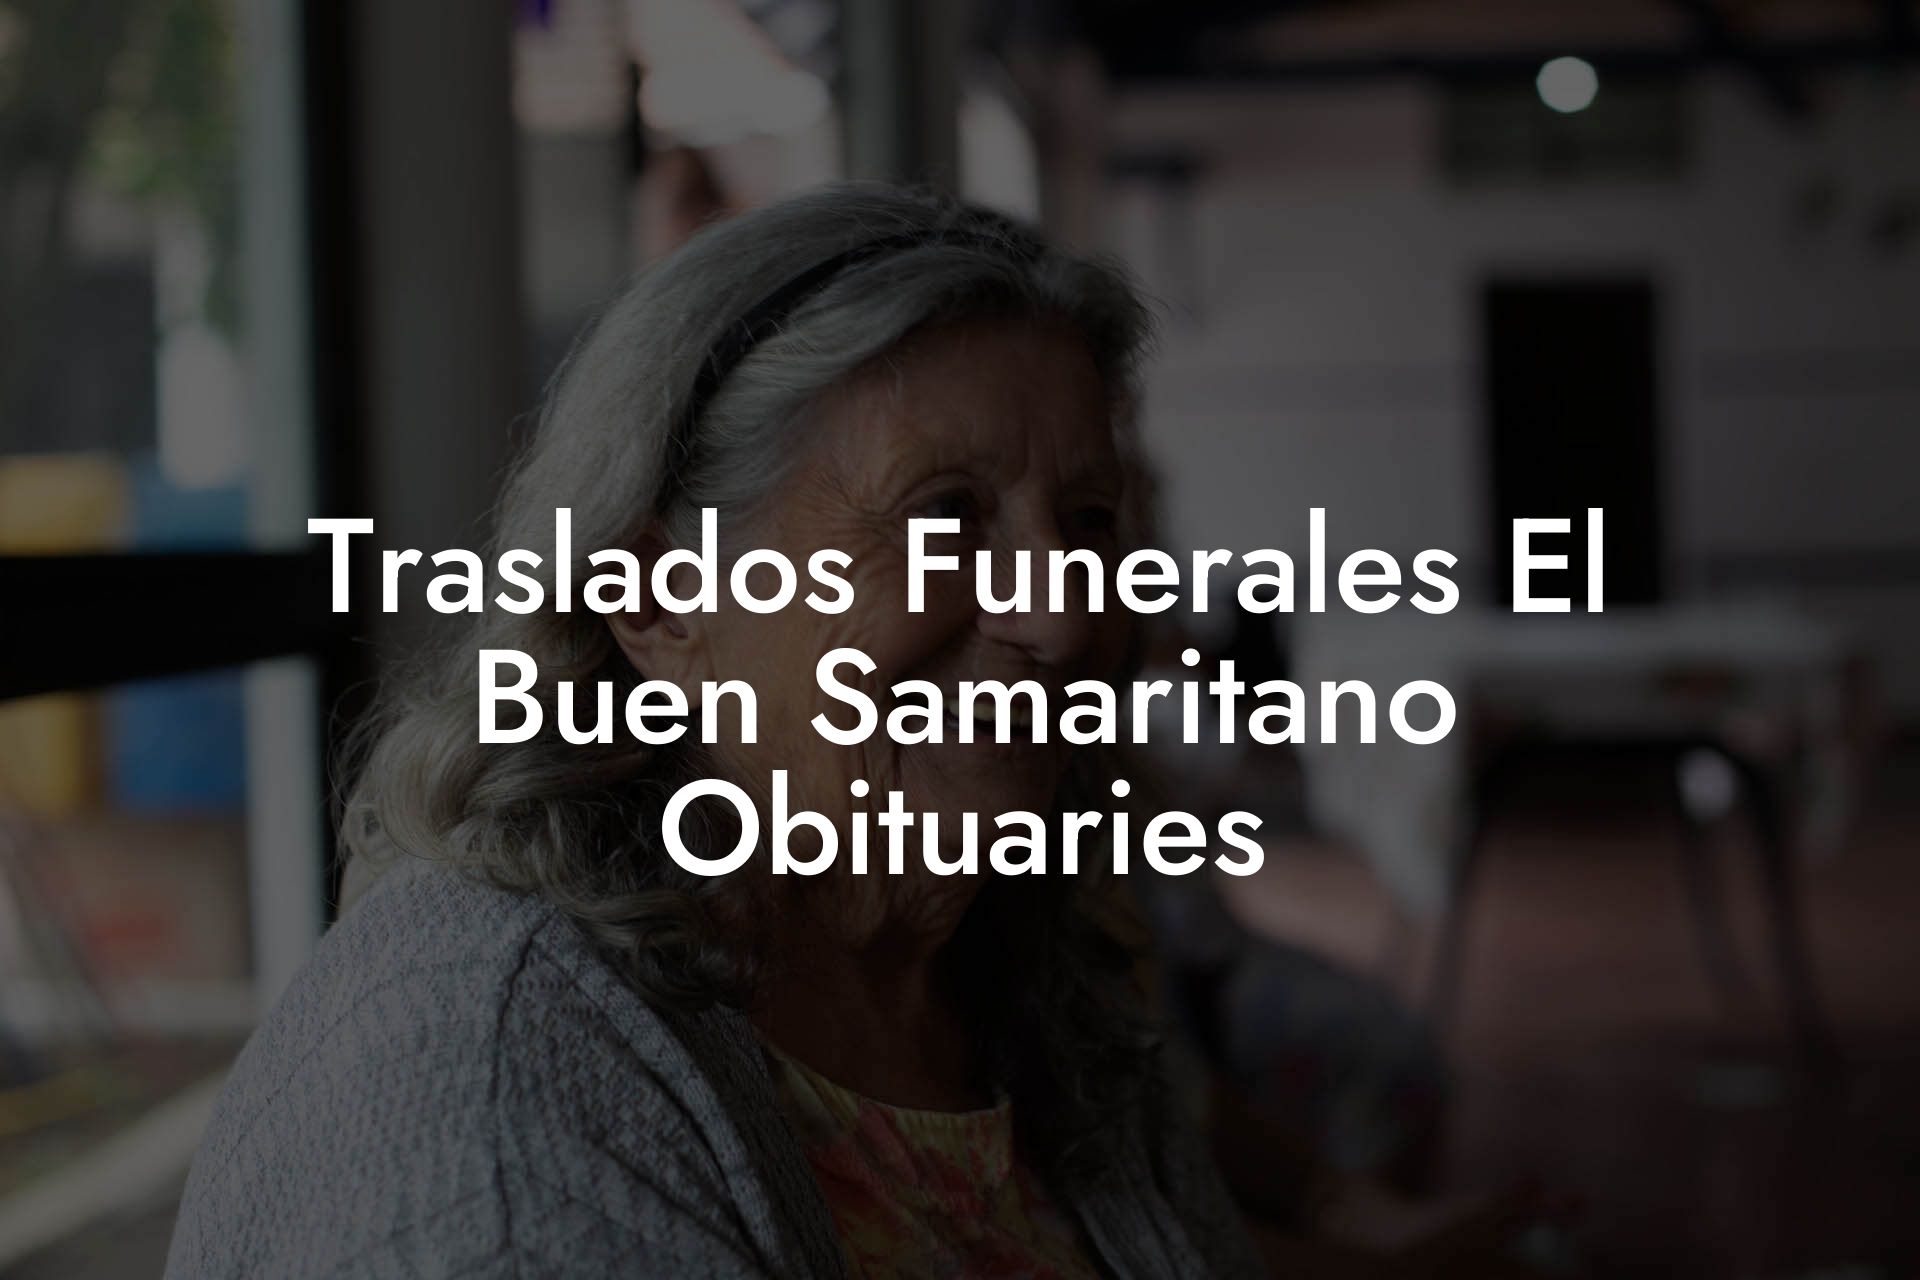 Traslados Funerales El Buen Samaritano Obituaries